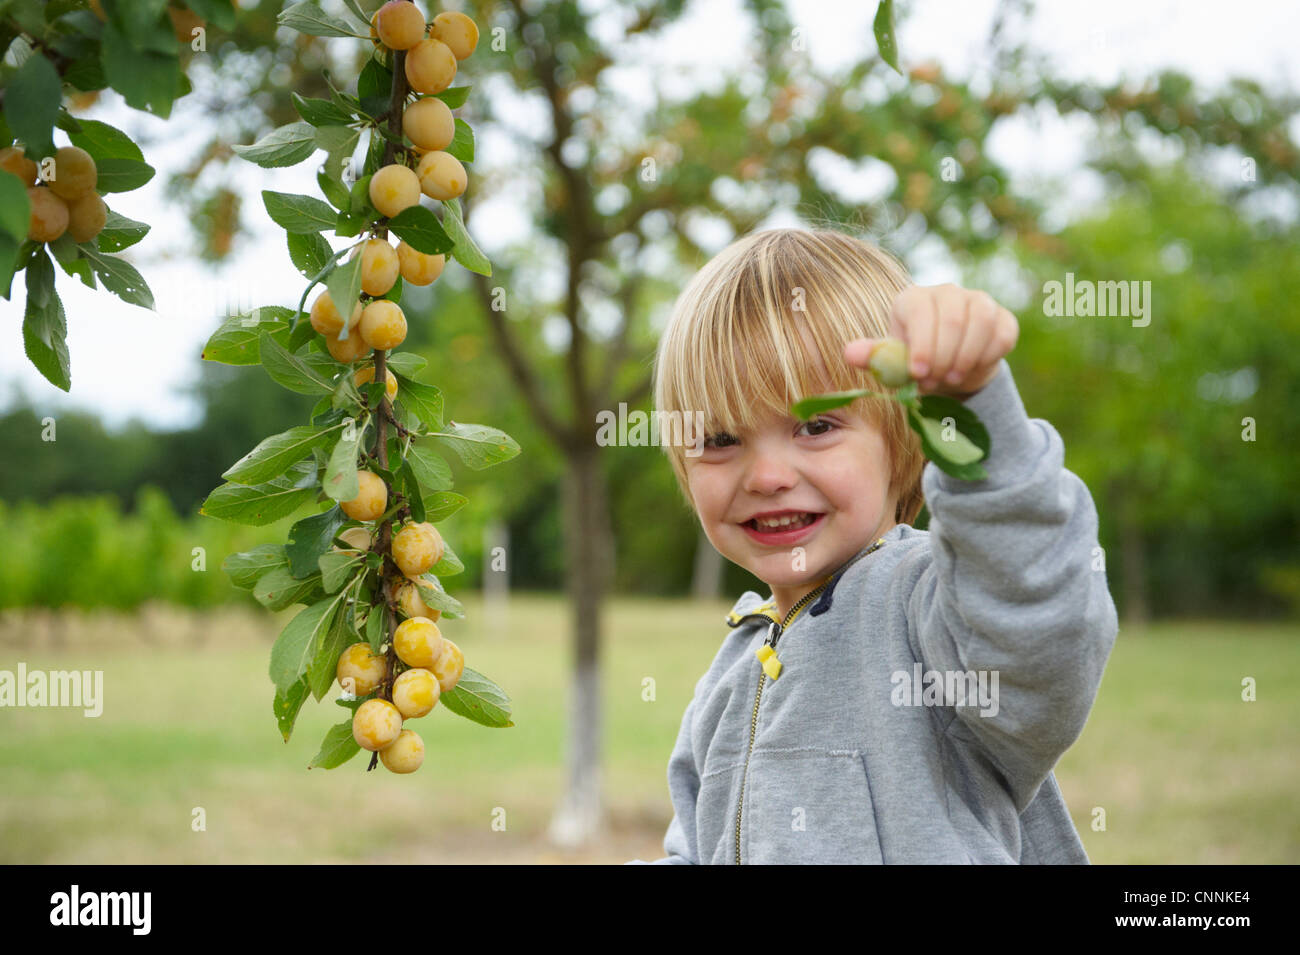 Boy picking fruit arbre coupé Banque D'Images